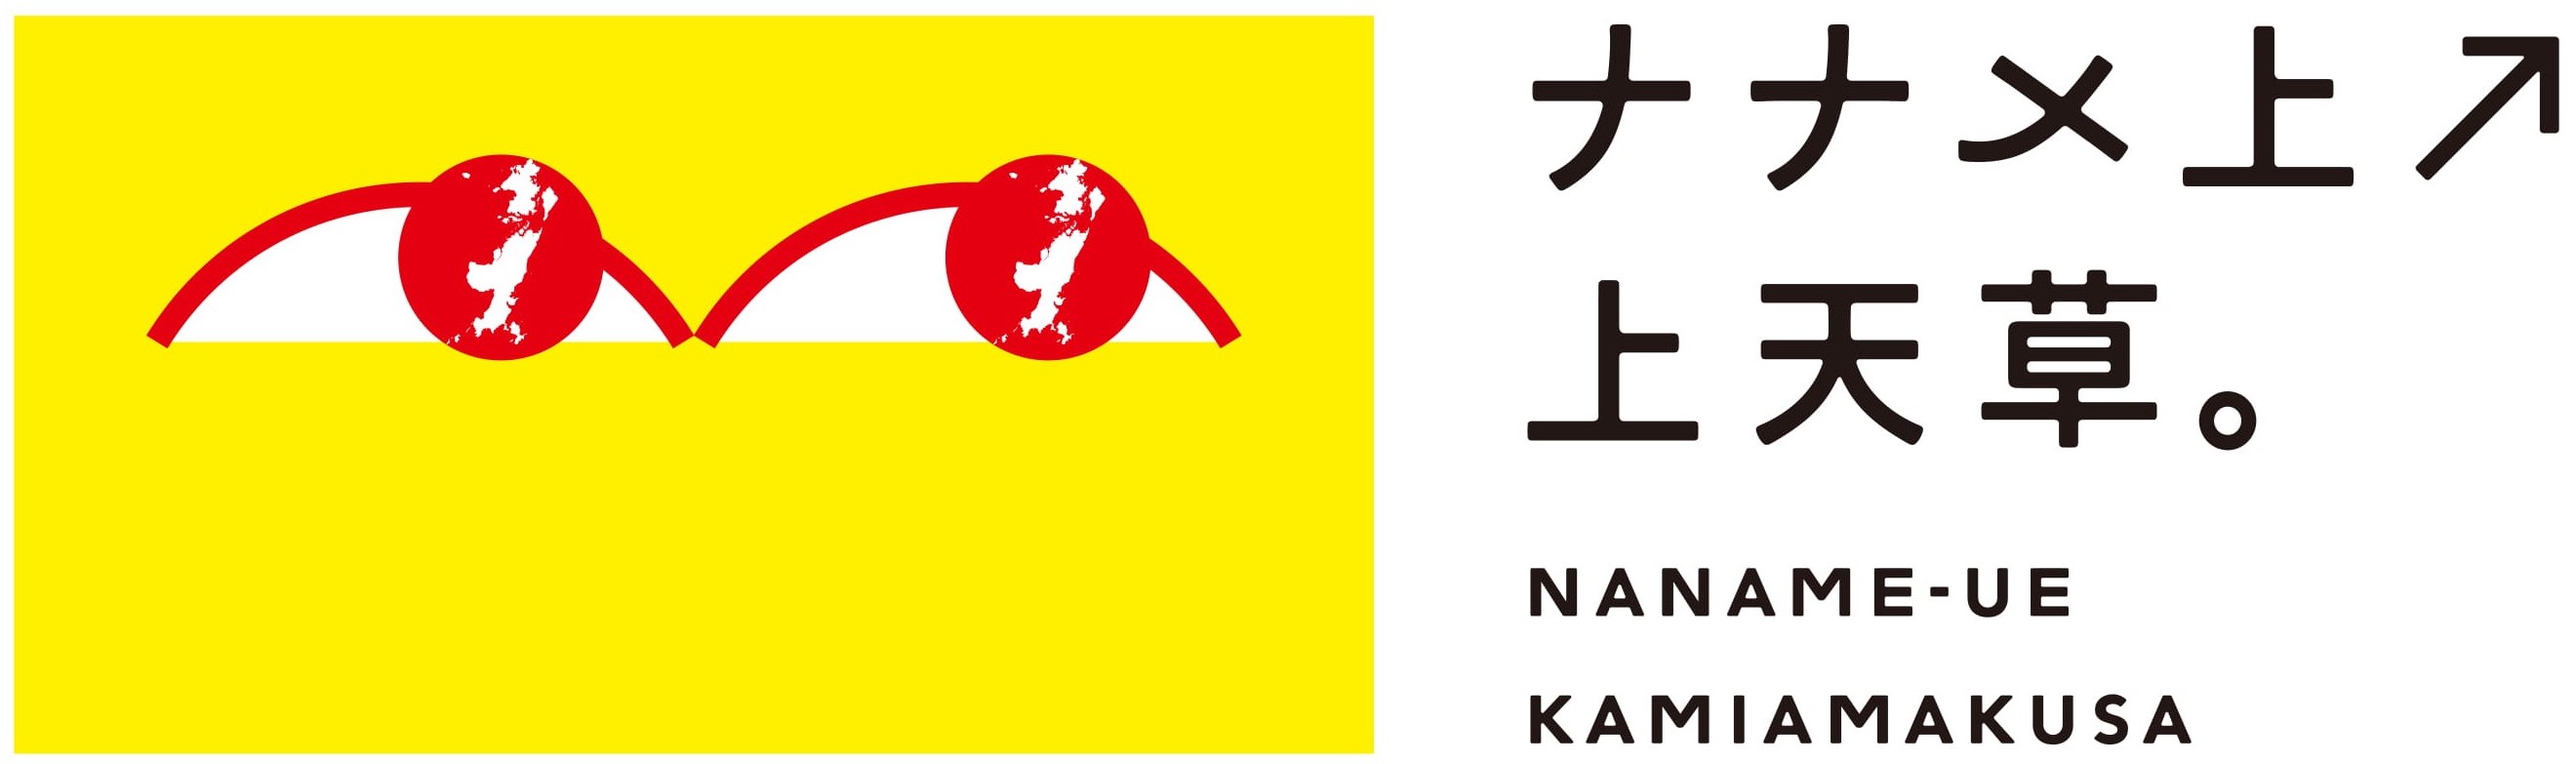 ナナメ上ロゴ-08